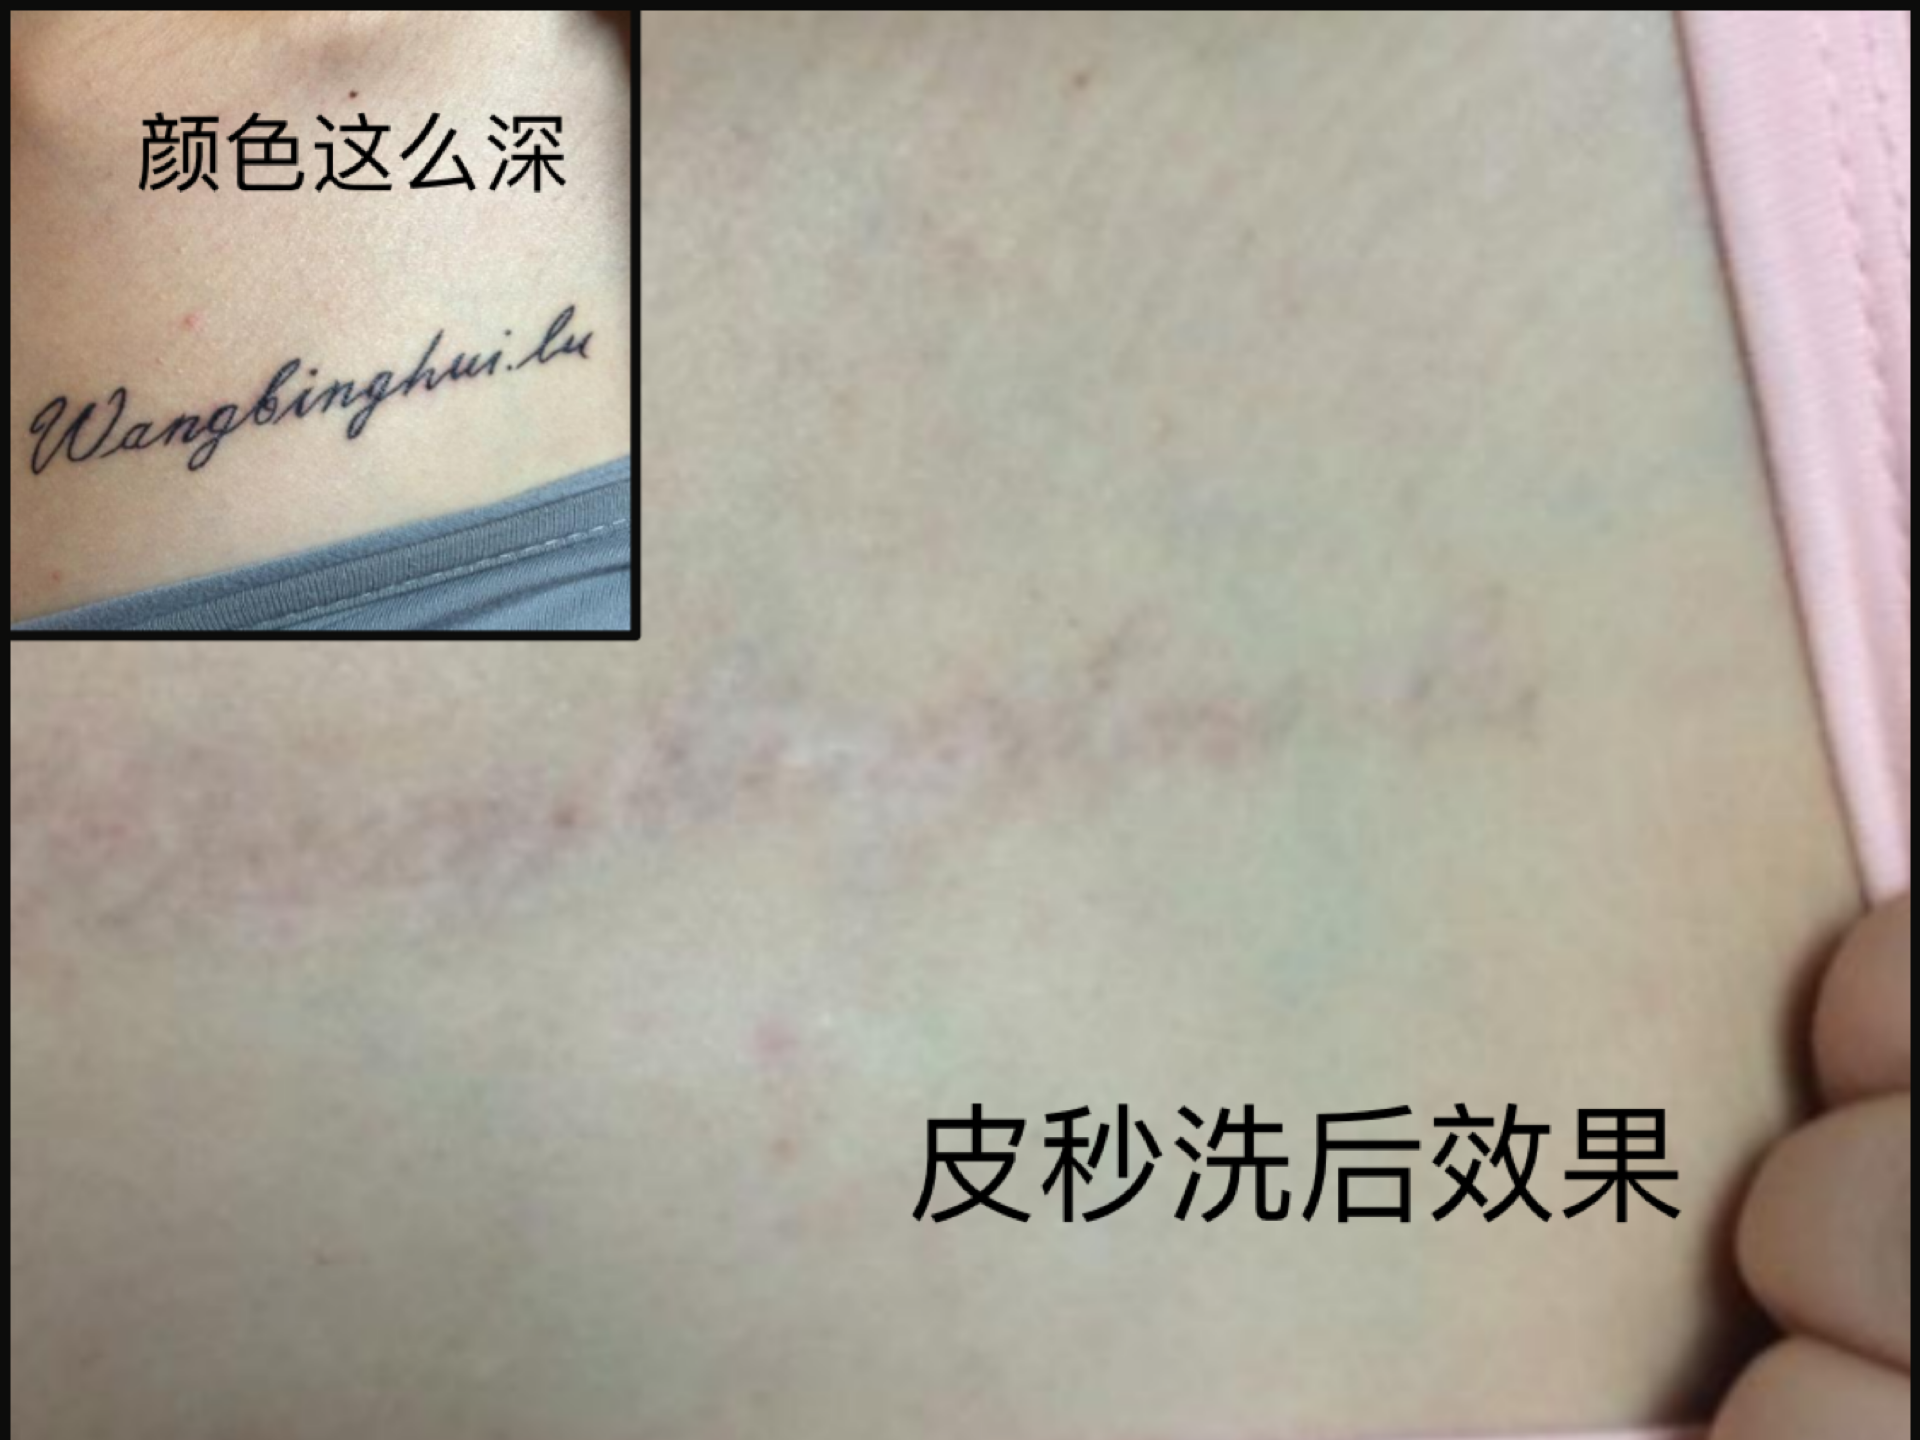 纹身素材第1212期——疤痕上的艺术 - 疤痕遮盖纹身修改 武汉老兵纹身